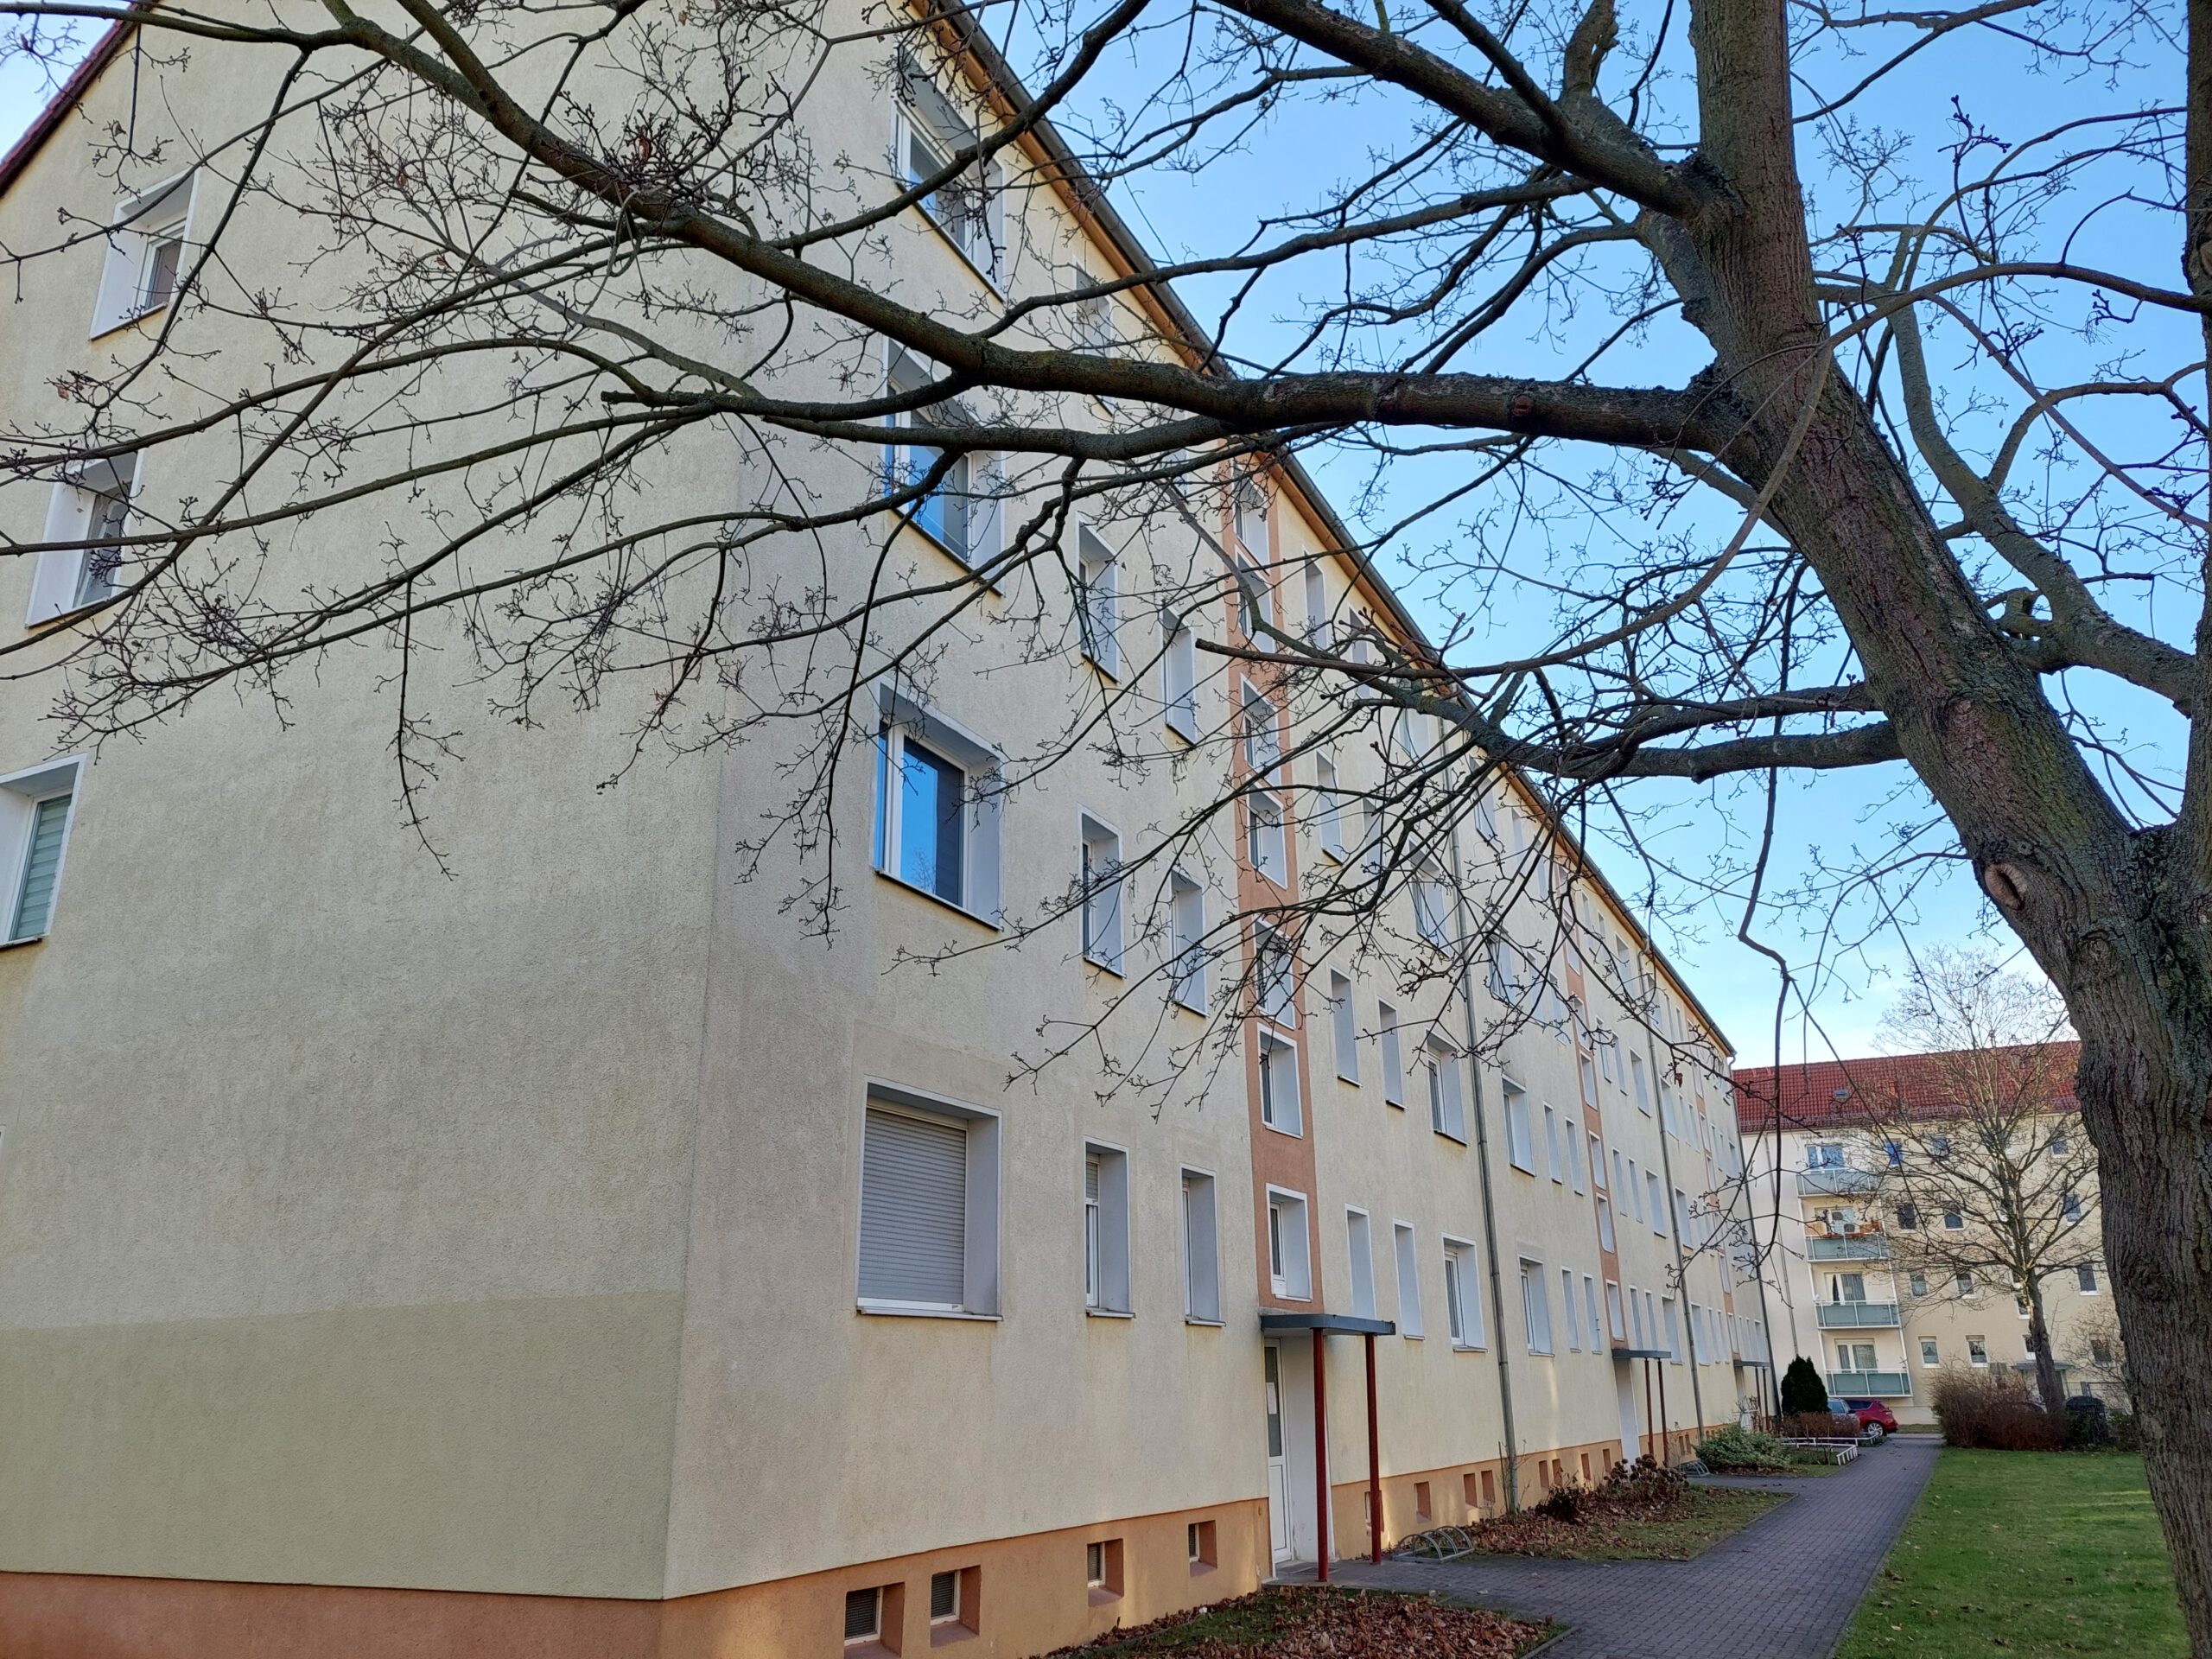 Eigentumswohnung Halle, Kurt-Freund-Straße - Wohnhauseingang